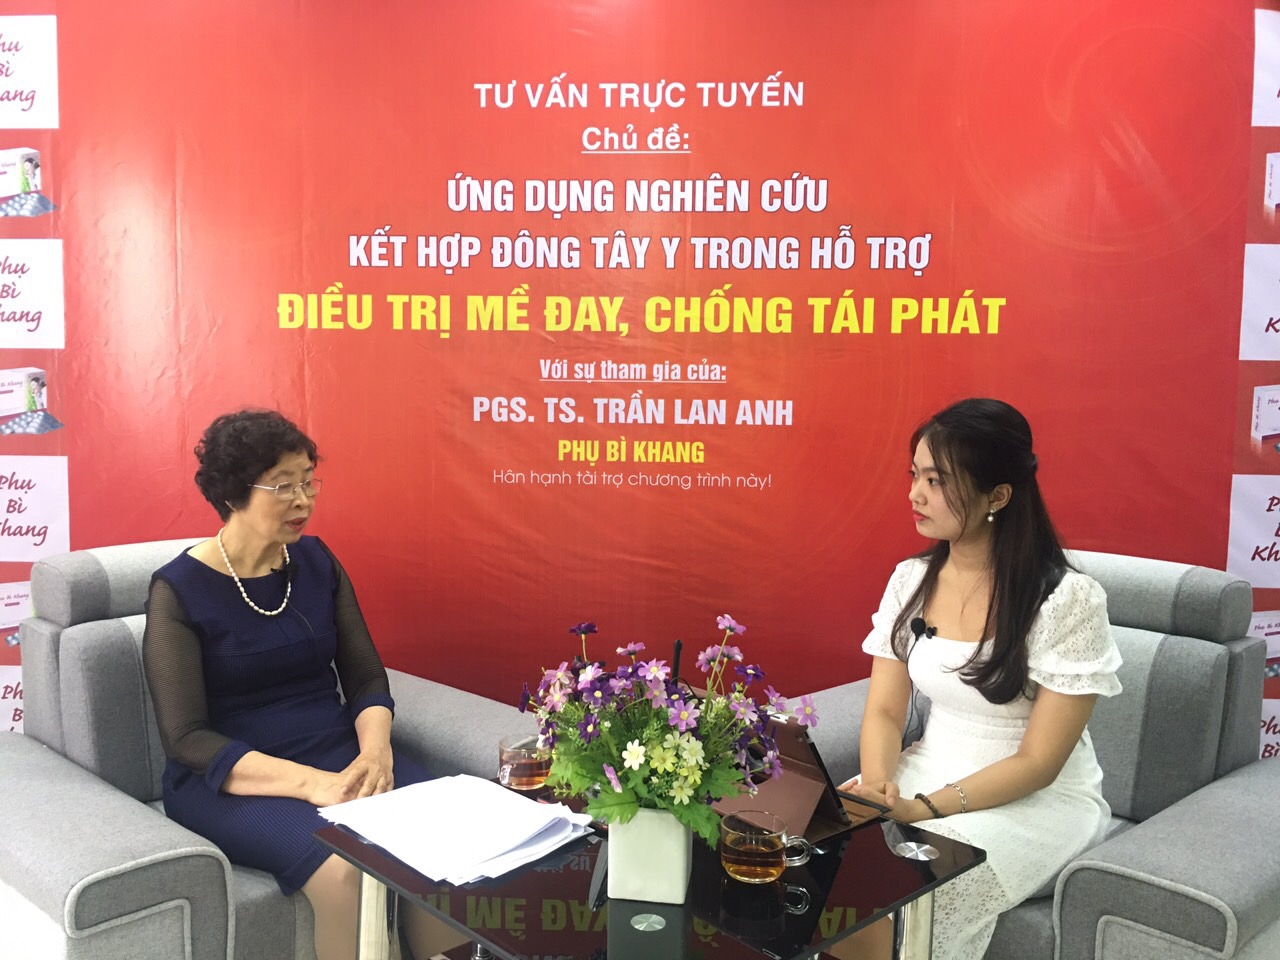 Giao lưu trực tuyến cùng chuyên gia Trần Lan Anh